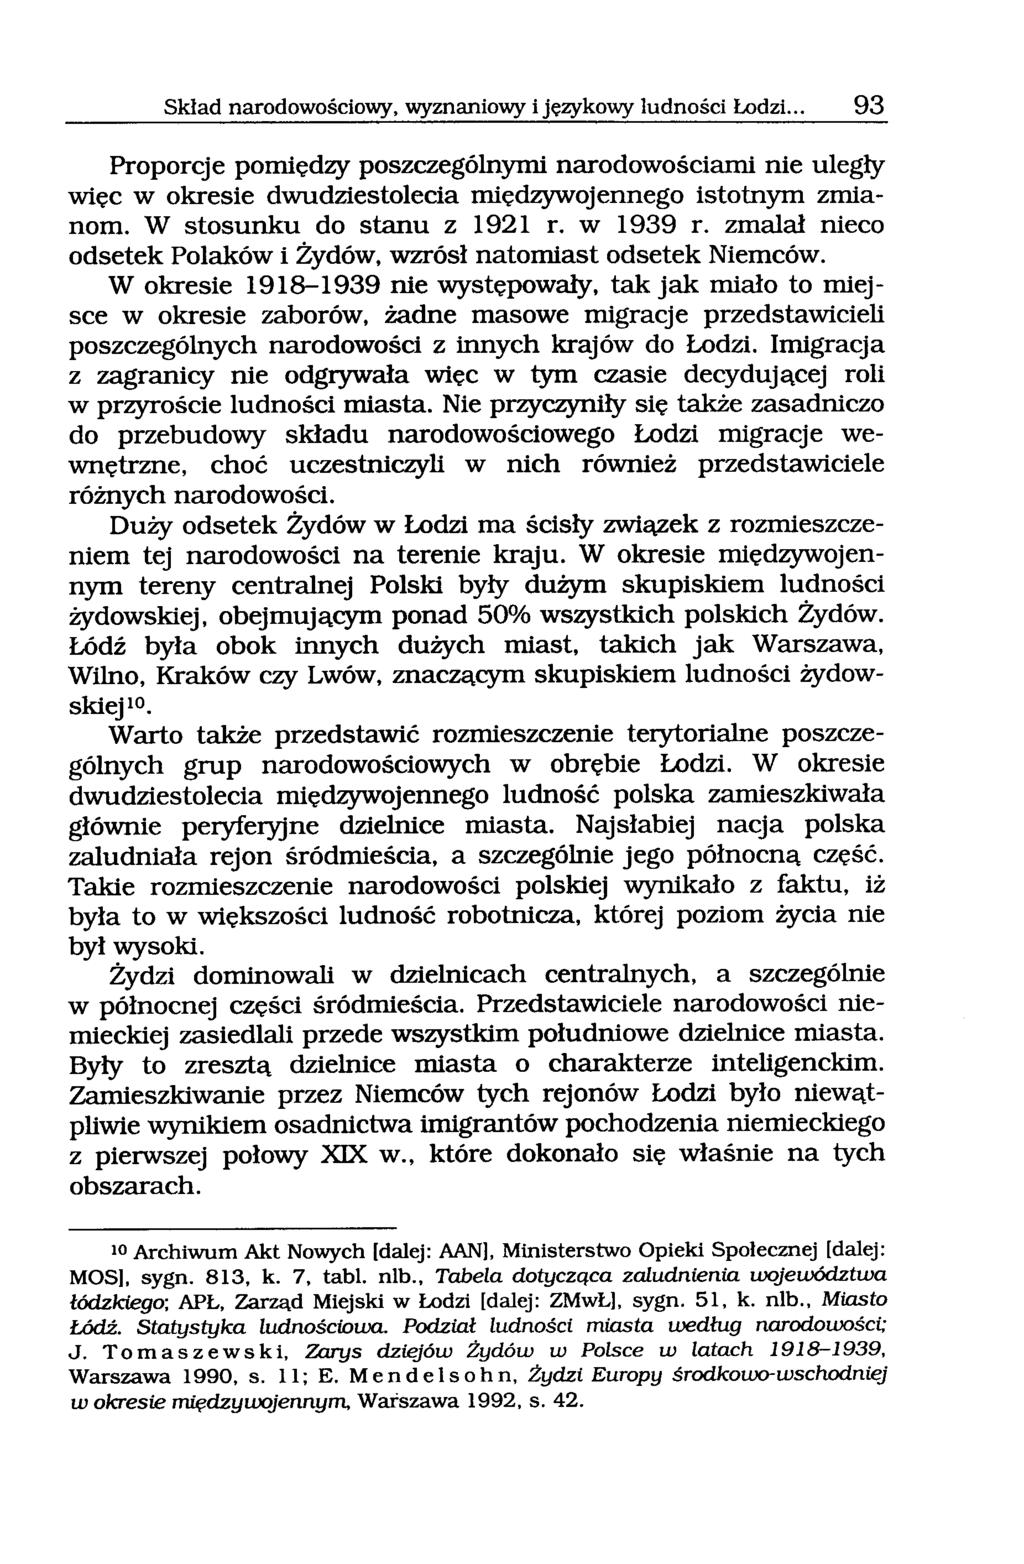 Skład narodowościowy, wyznaniowy i językowy ludności Łodzi... 93 Proporcje pomiędzy poszczególnymi narodowościami nie uległy więc w okresie dwudziestolecia międzywojennego istotnym zmianom.